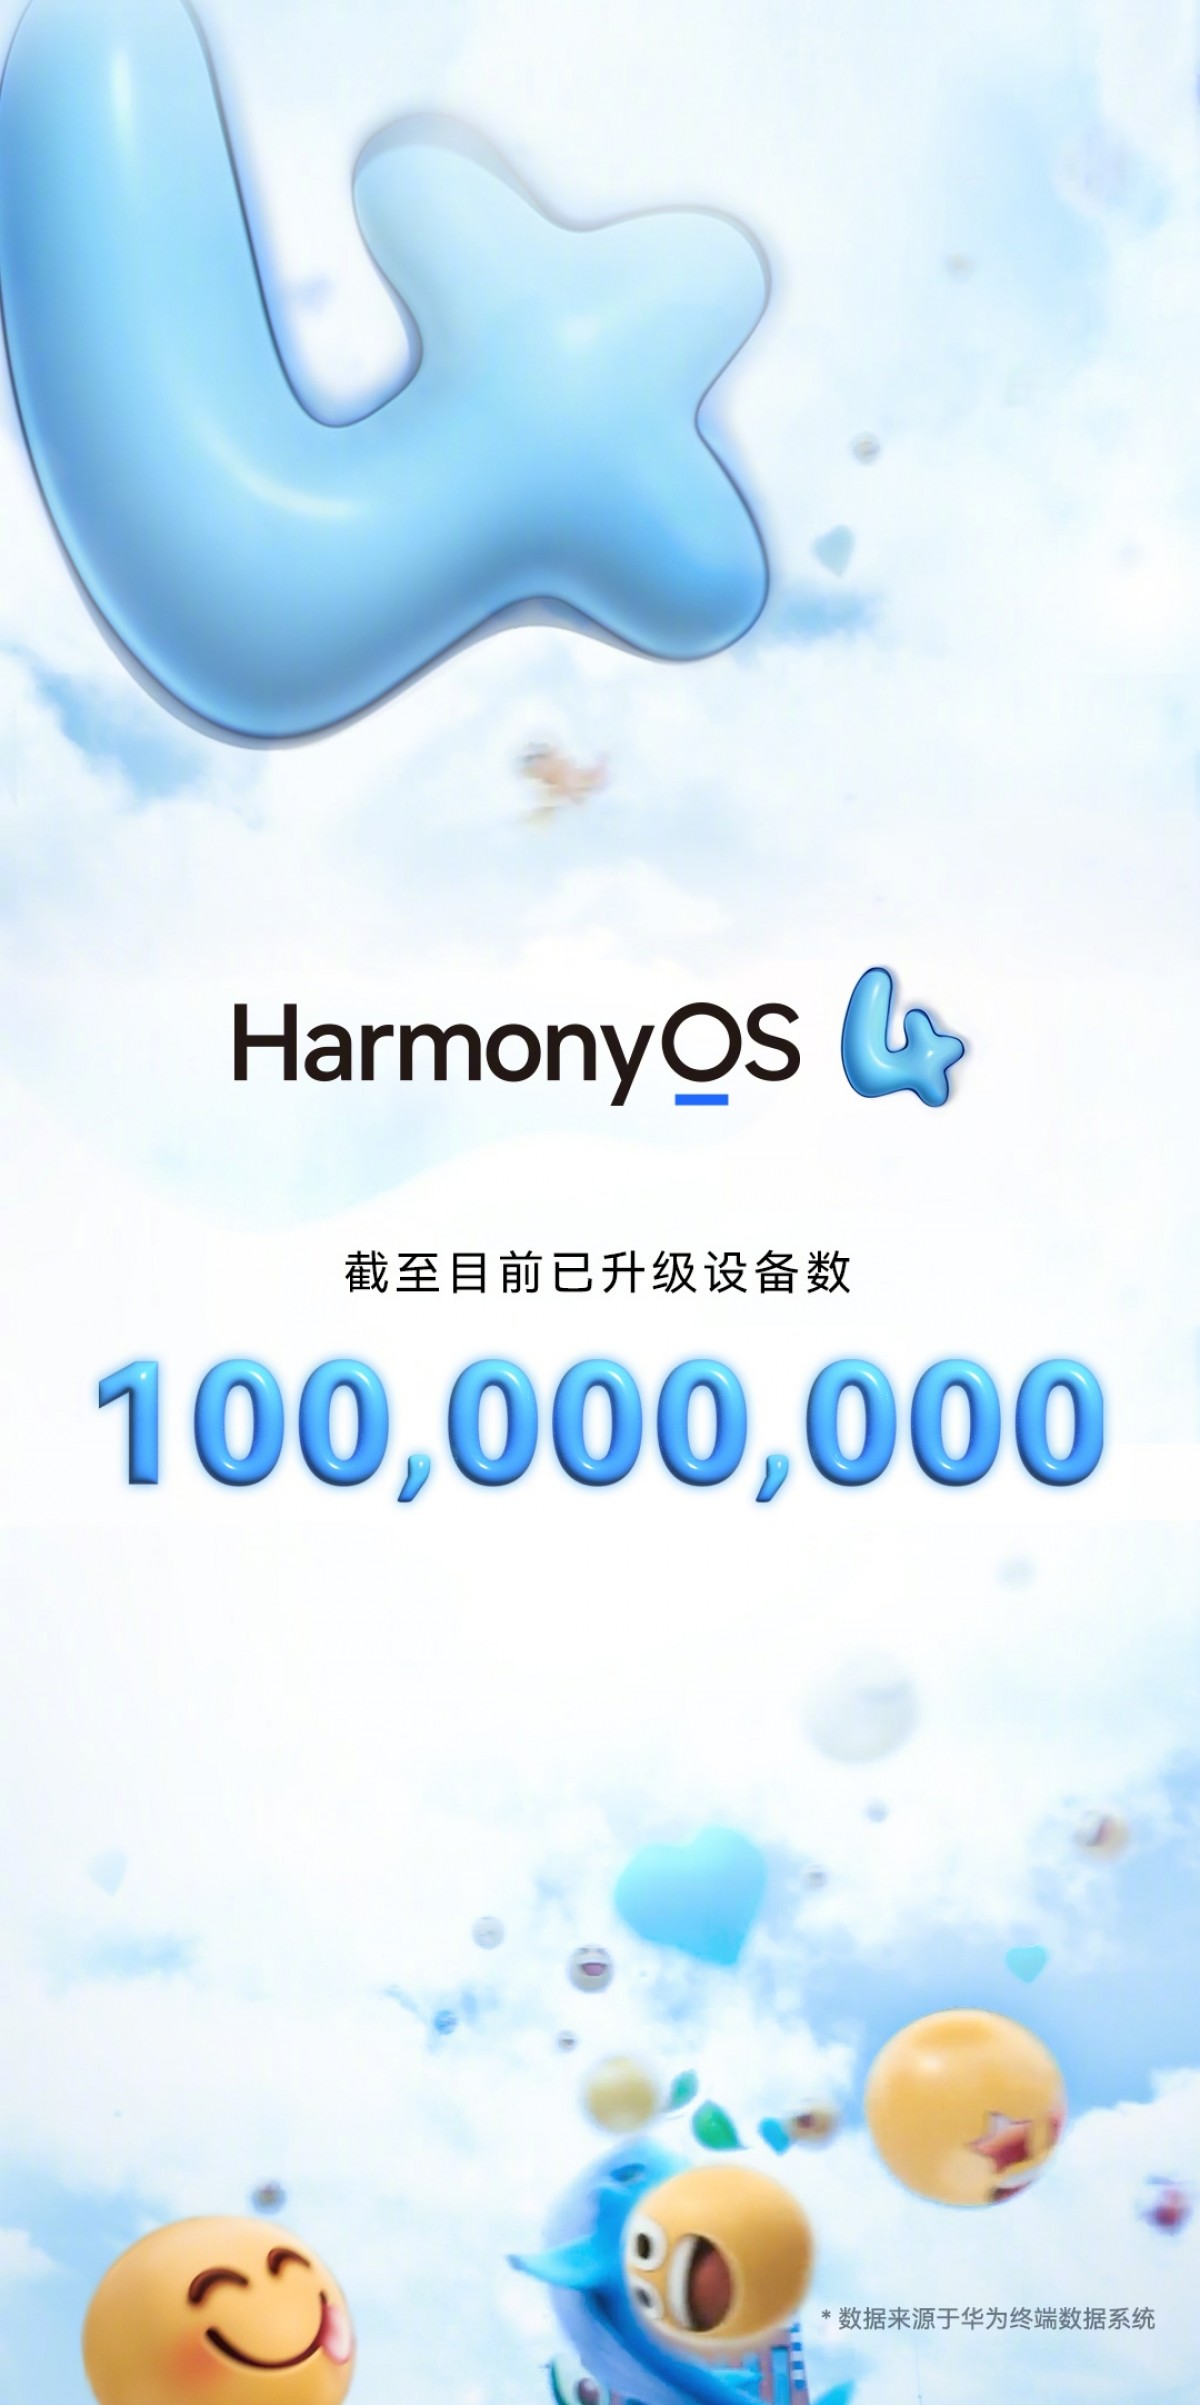 Huawei Rayakan Pencapaian 100 Juta Pengguna HarmonyOS 4